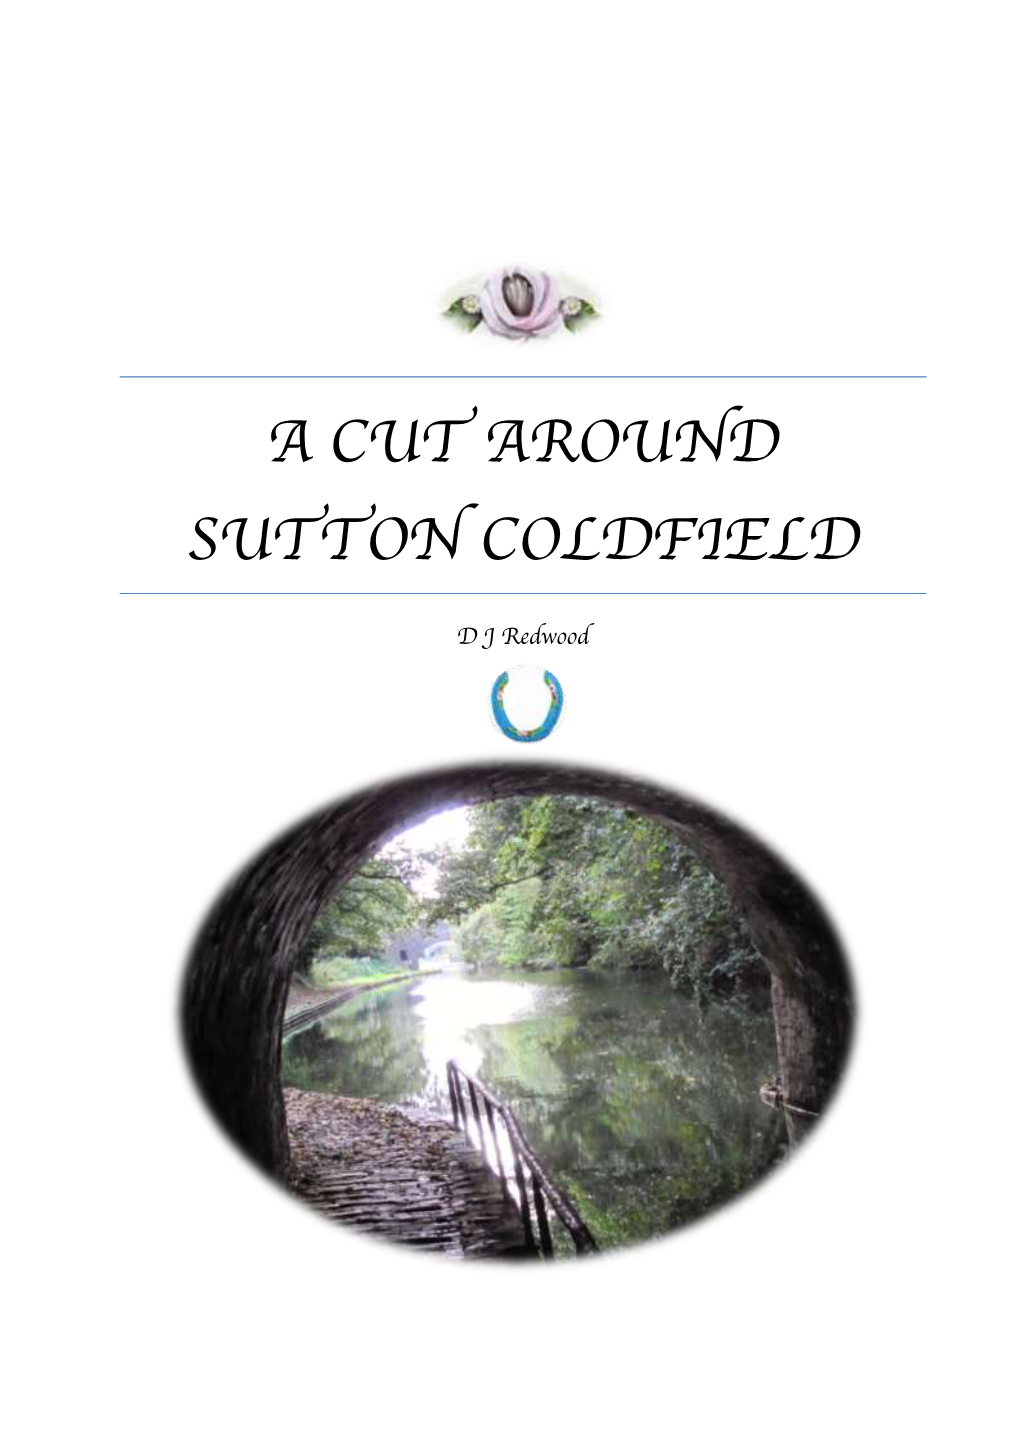 A Cut Around Sutton Coldfield